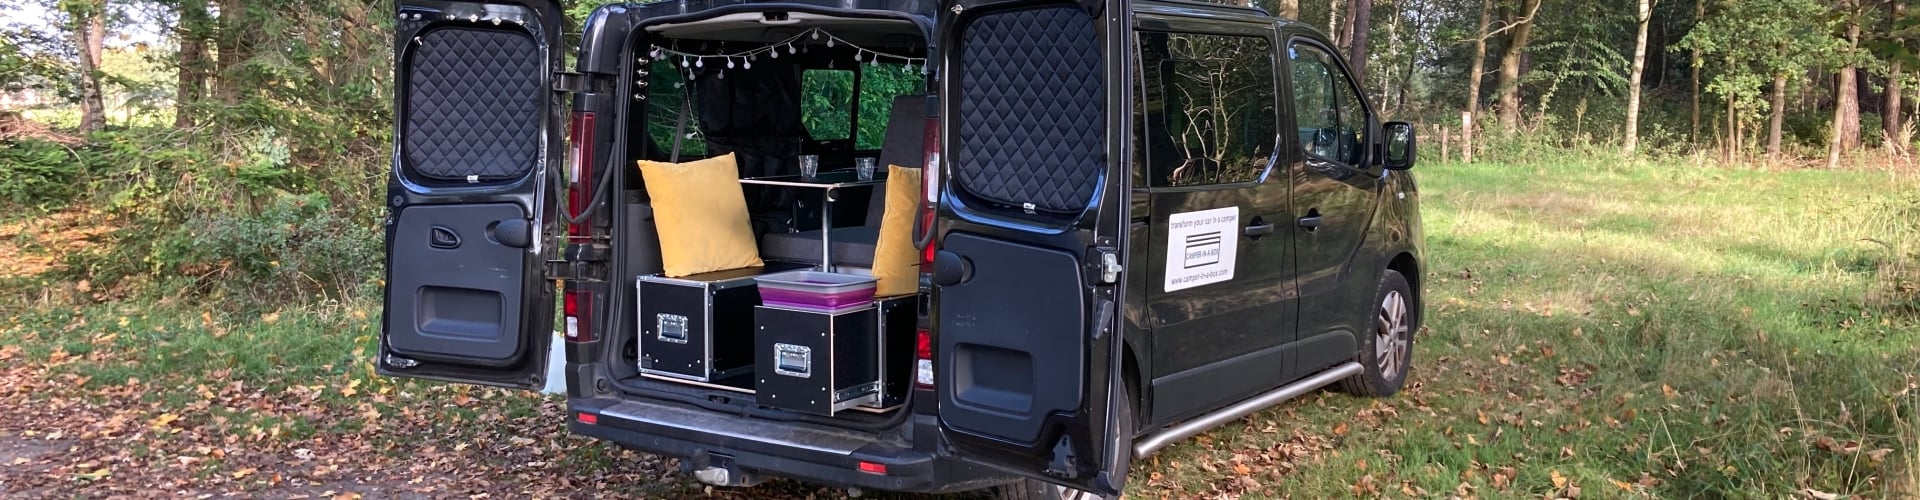 Minicamper camper-in-a-box